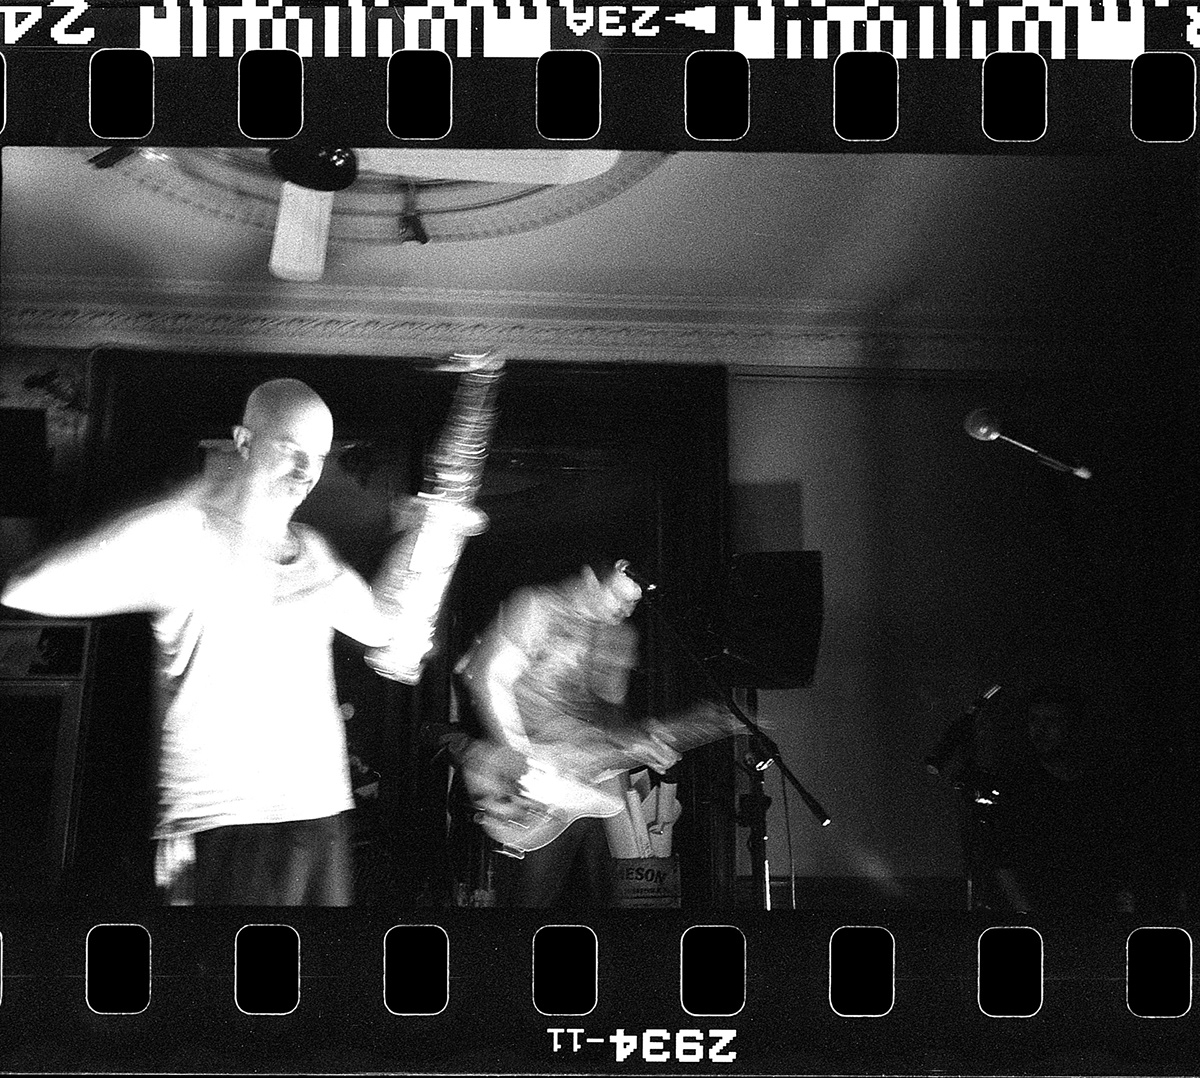 babu krol concert photography analog photography